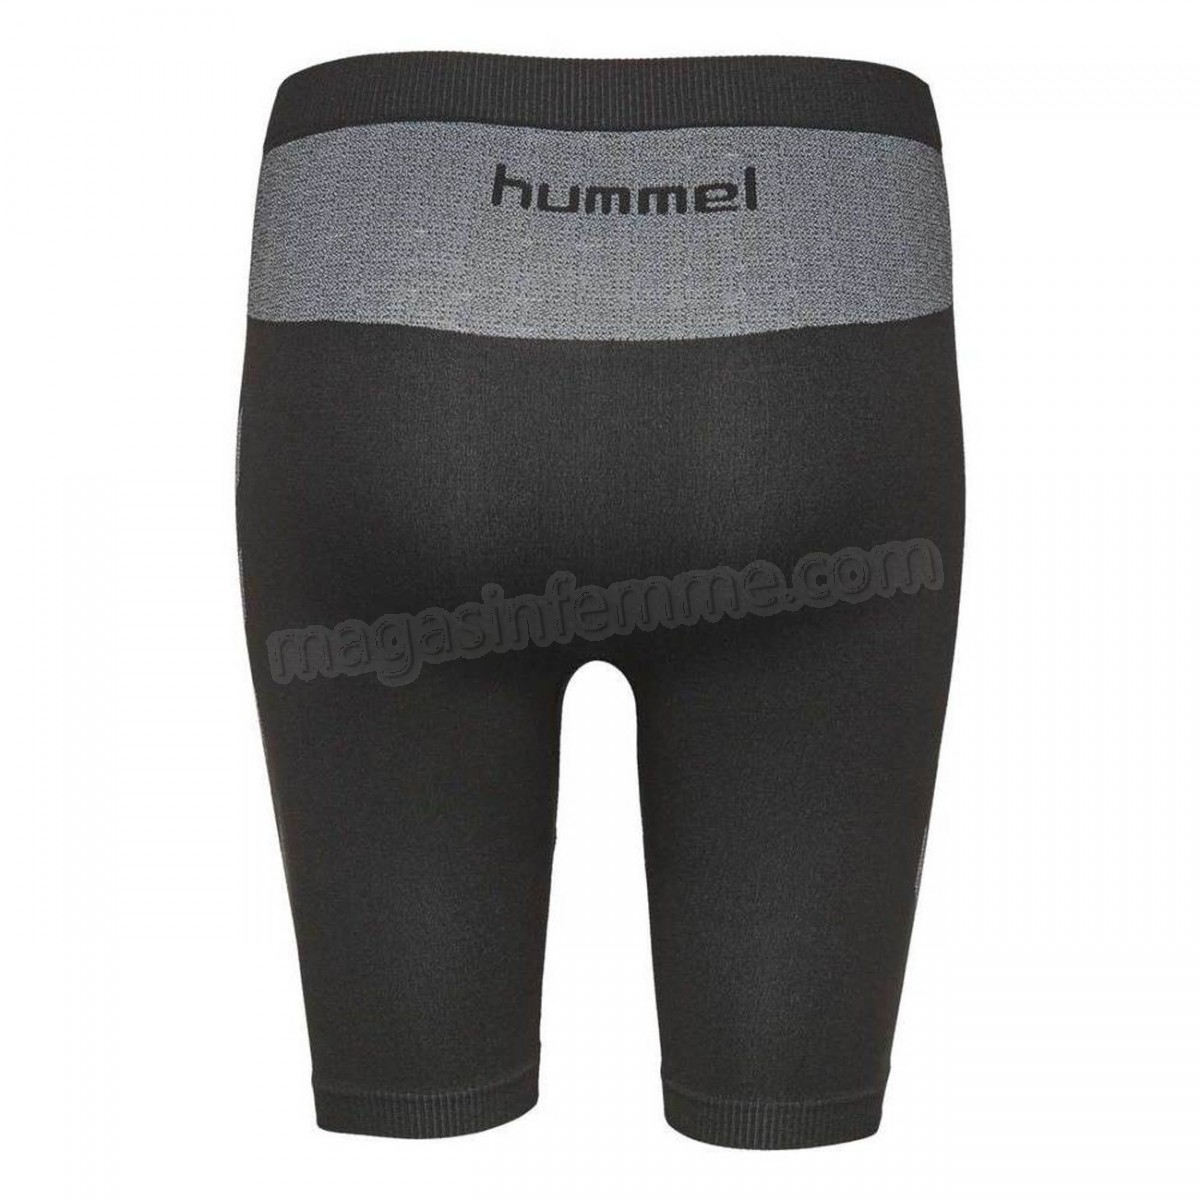 Hummel-Fitness femme HUMMEL Short femme Hummel First Comfort en solde - -2